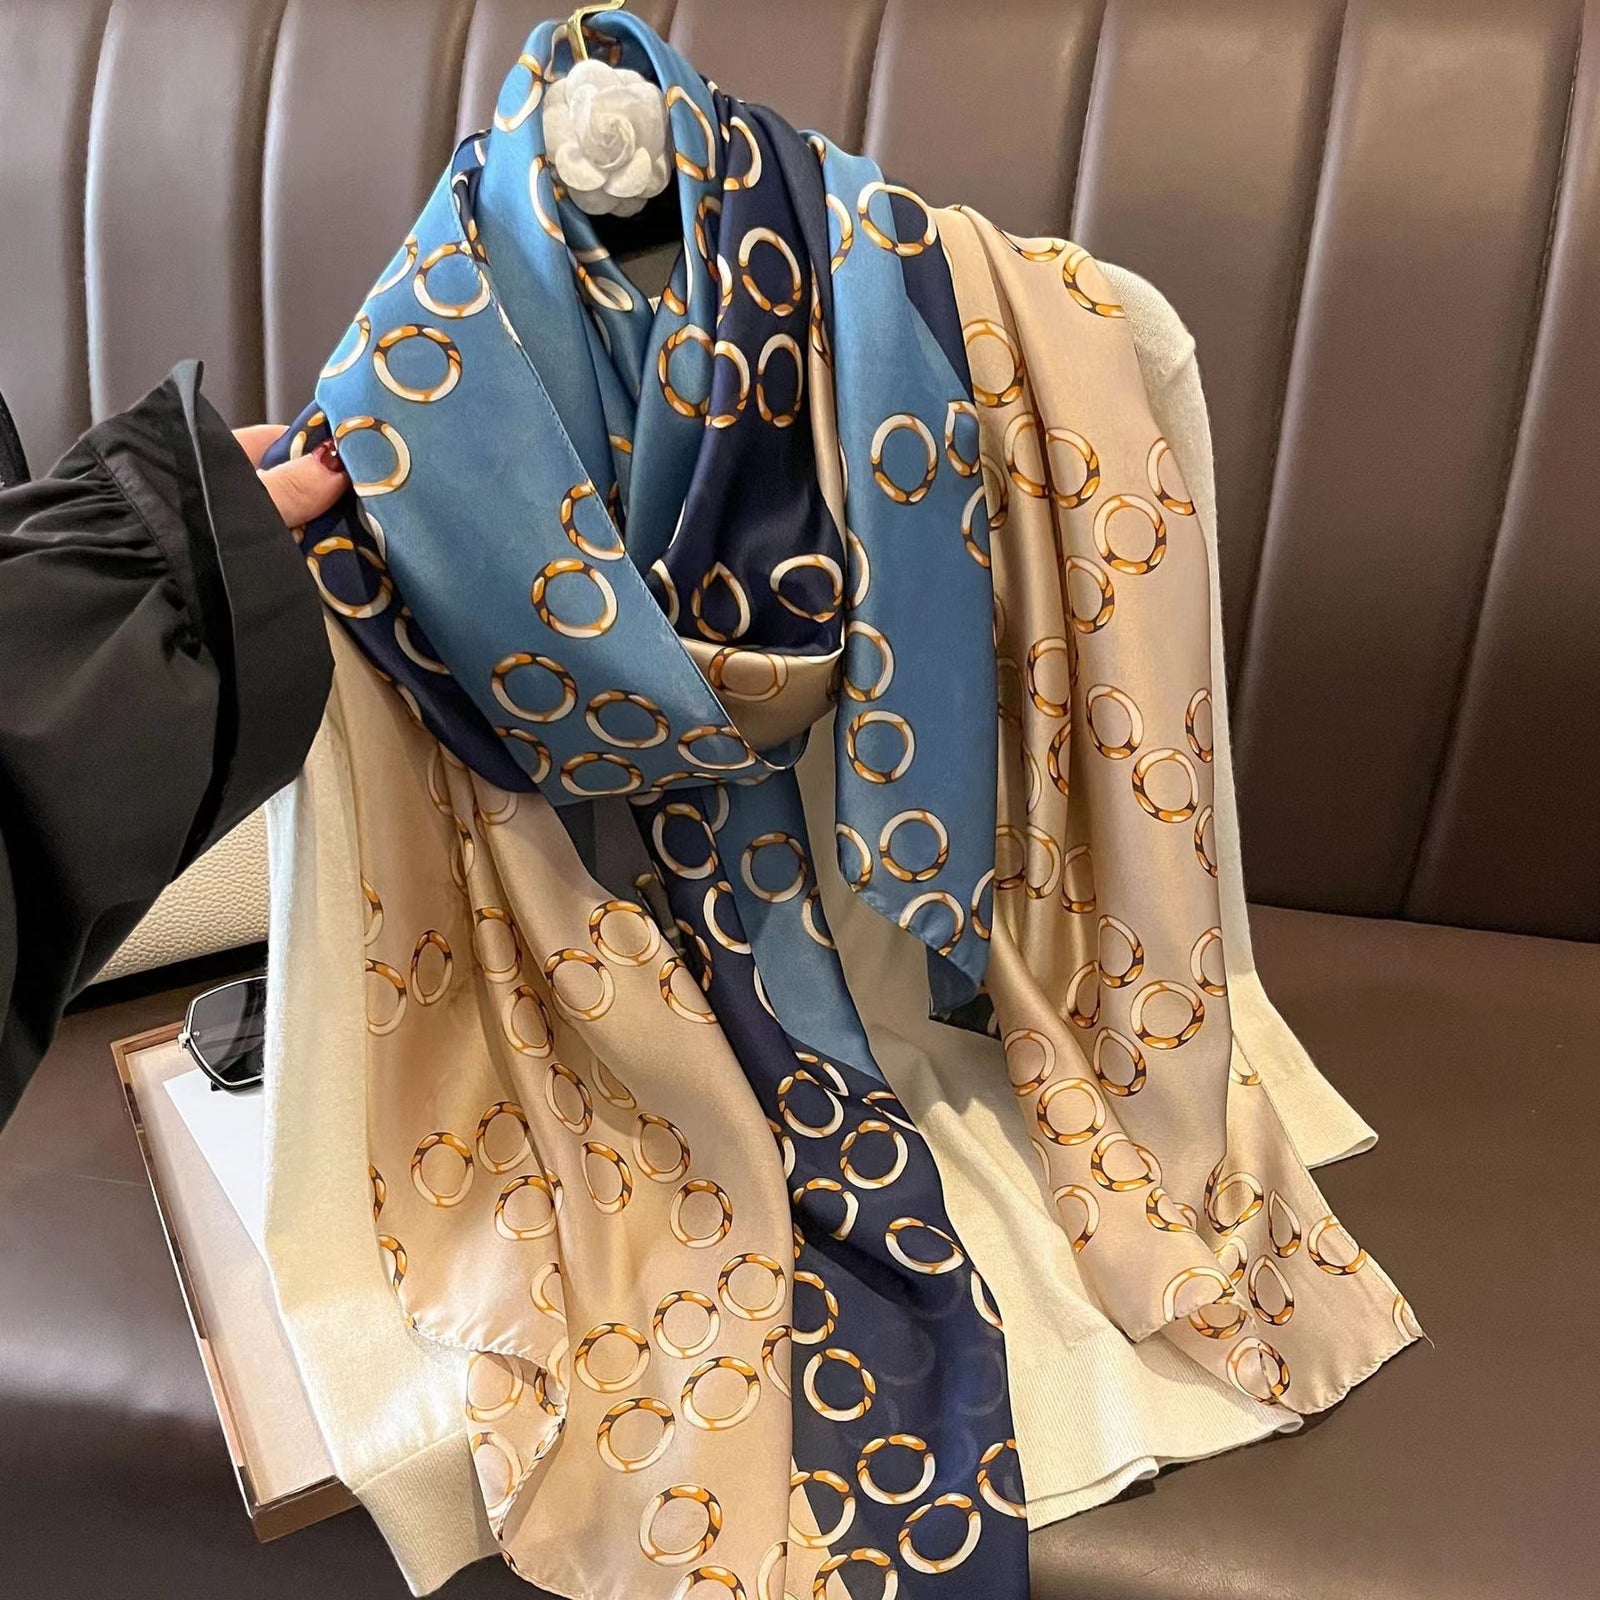 Designer Silk Scarf Female Foulard Bandana Long Shawls Wraps Winter Neck Scarves Pashmina Lady Hijab Luxury New